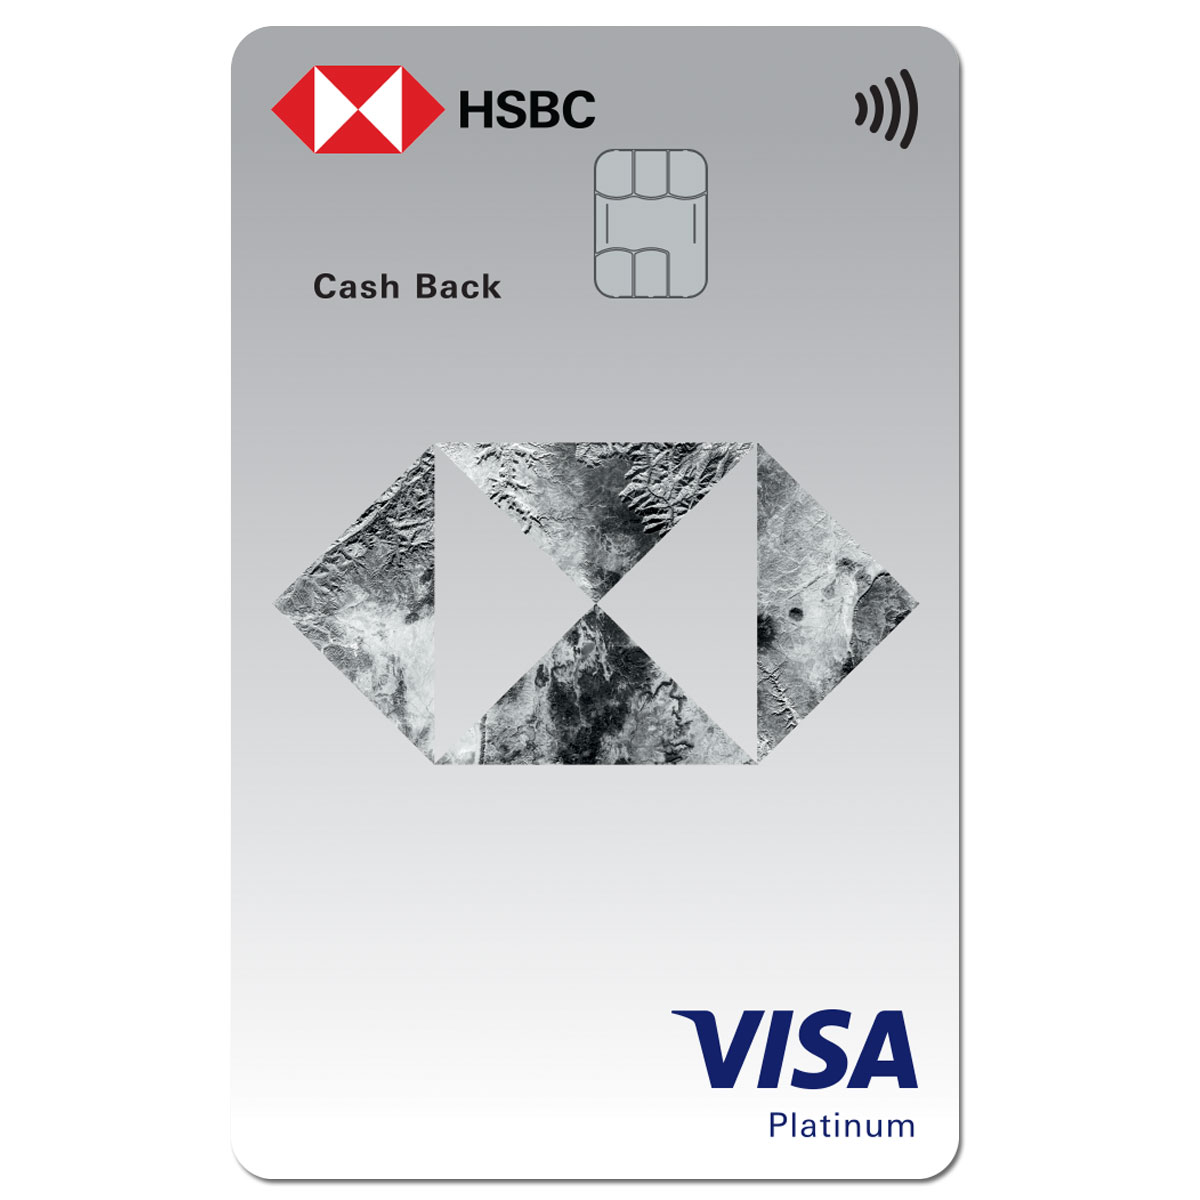 hsbc-cash-back-visa-card-cash-rebate-credit-card-hsbc-vn